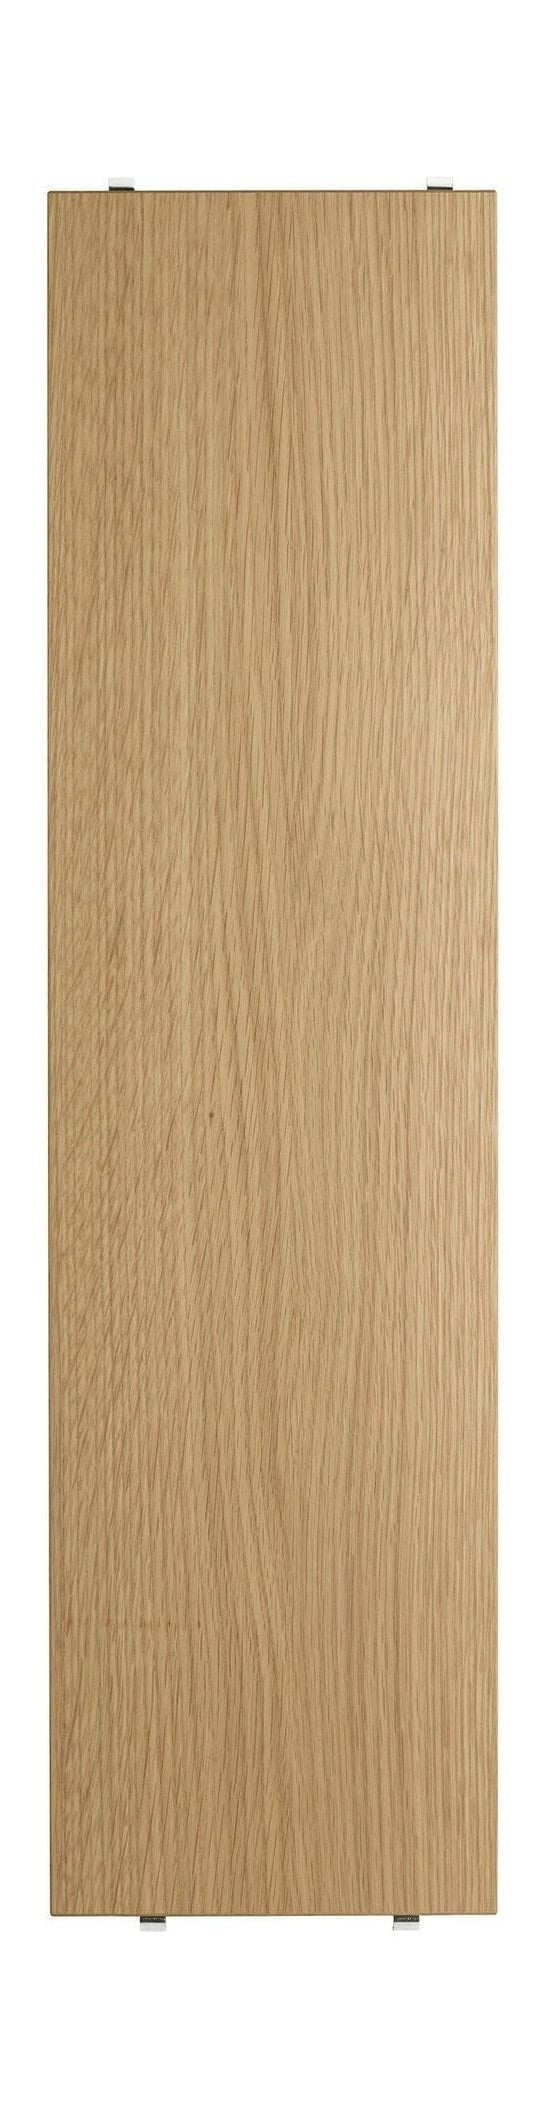 String Furniture String System Shelf Made Of Wood Oak 20x78 Cm, Set Of 3